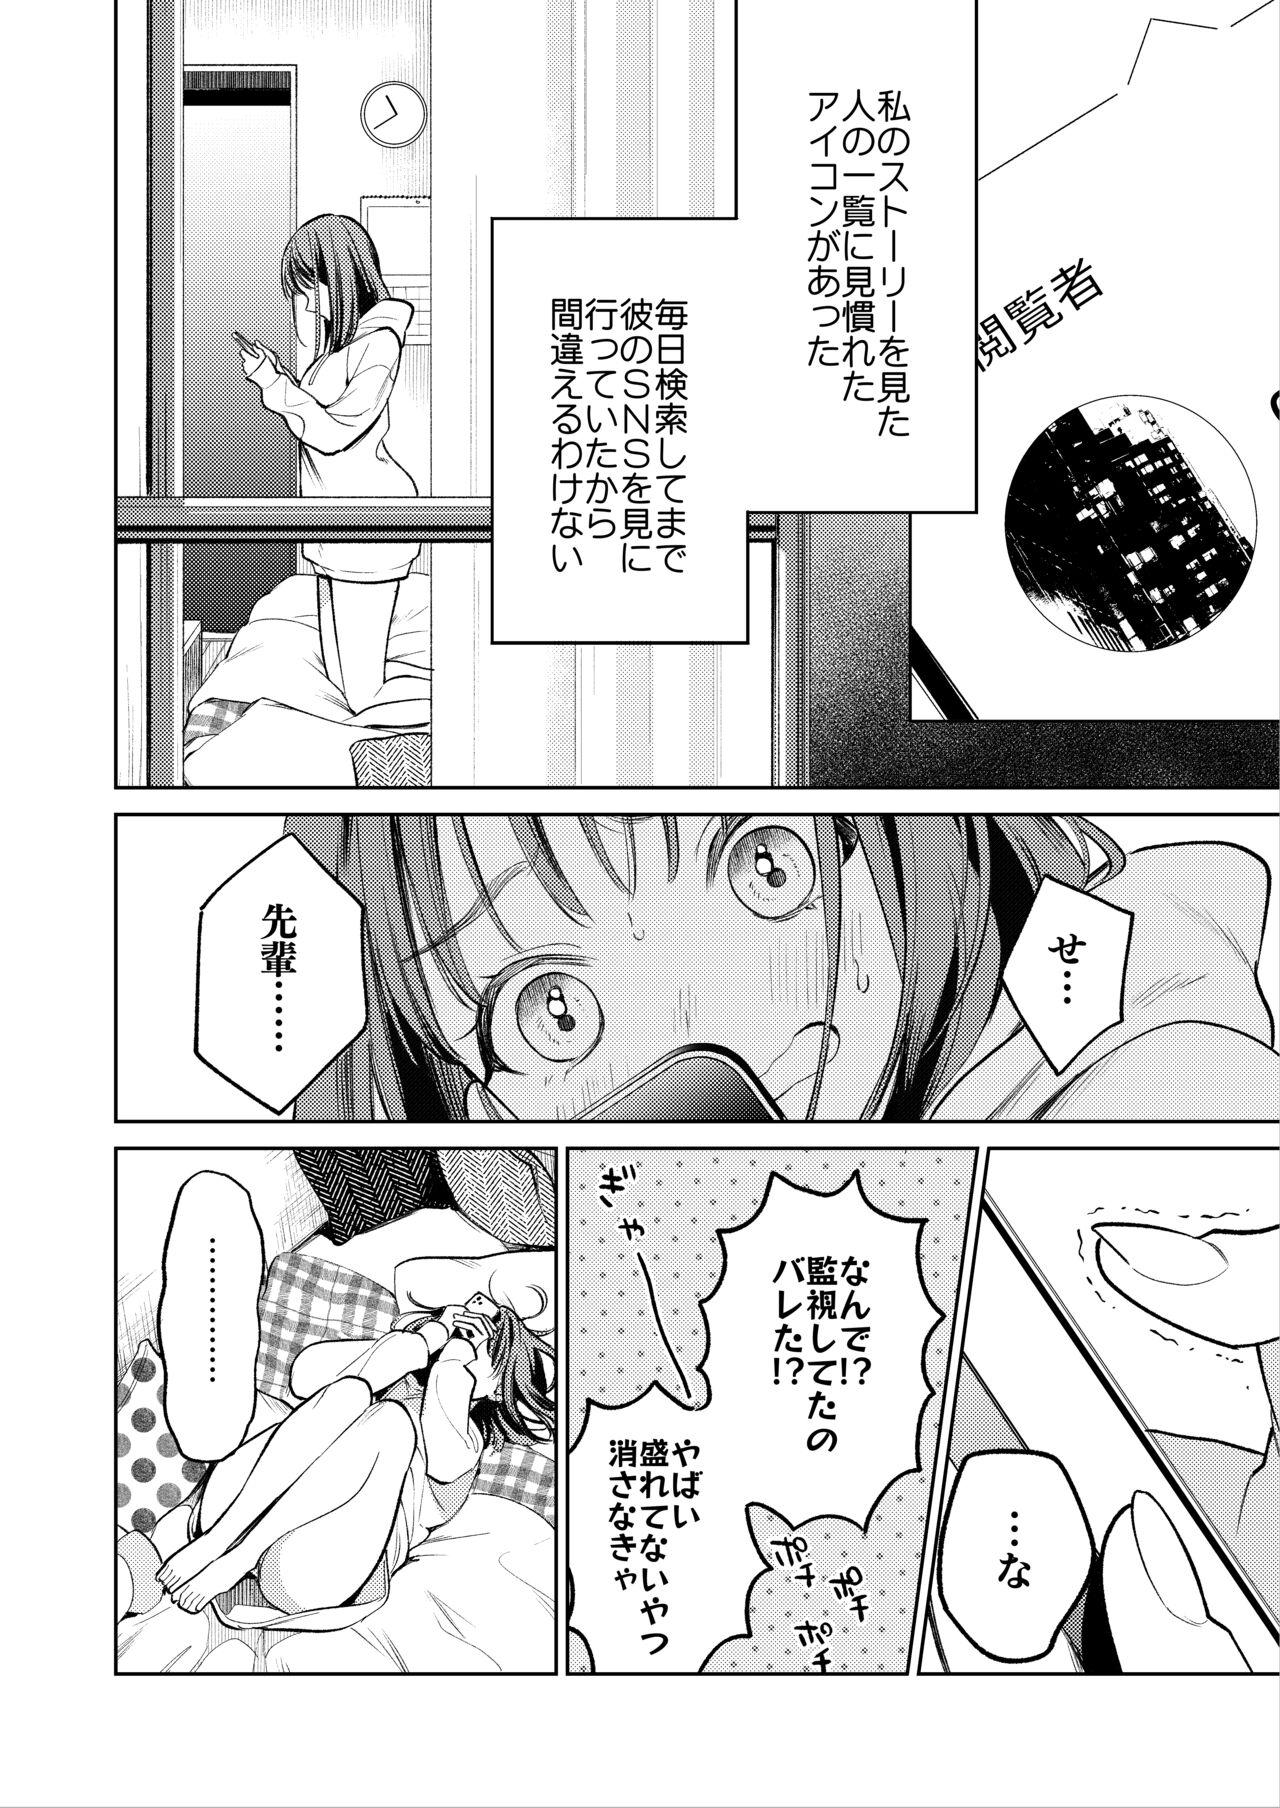 Dirty Senpai, Sonna no Shiranai desu - Original 19yo - Page 9